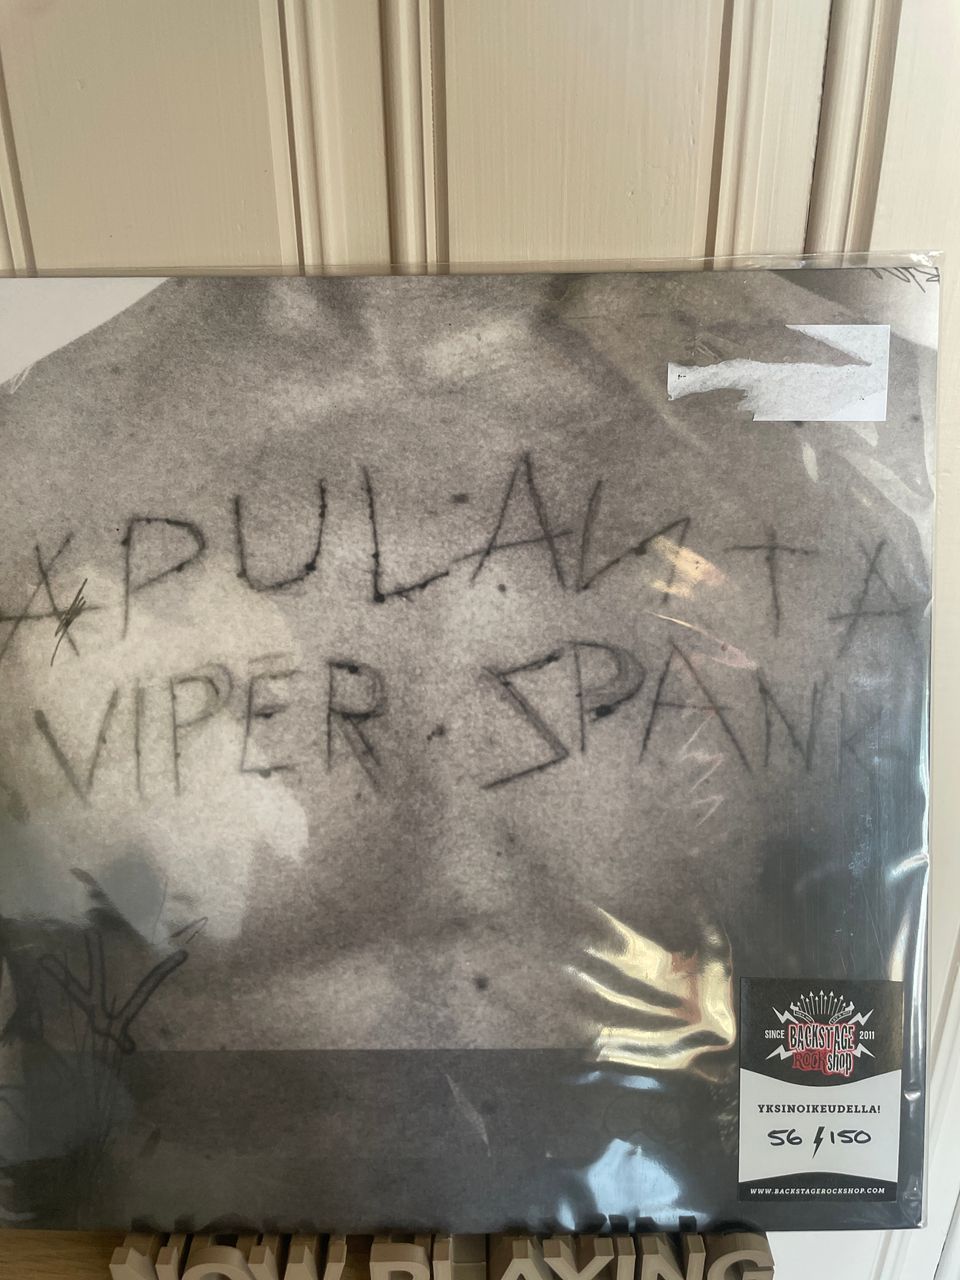 Apulanta - viper Spank